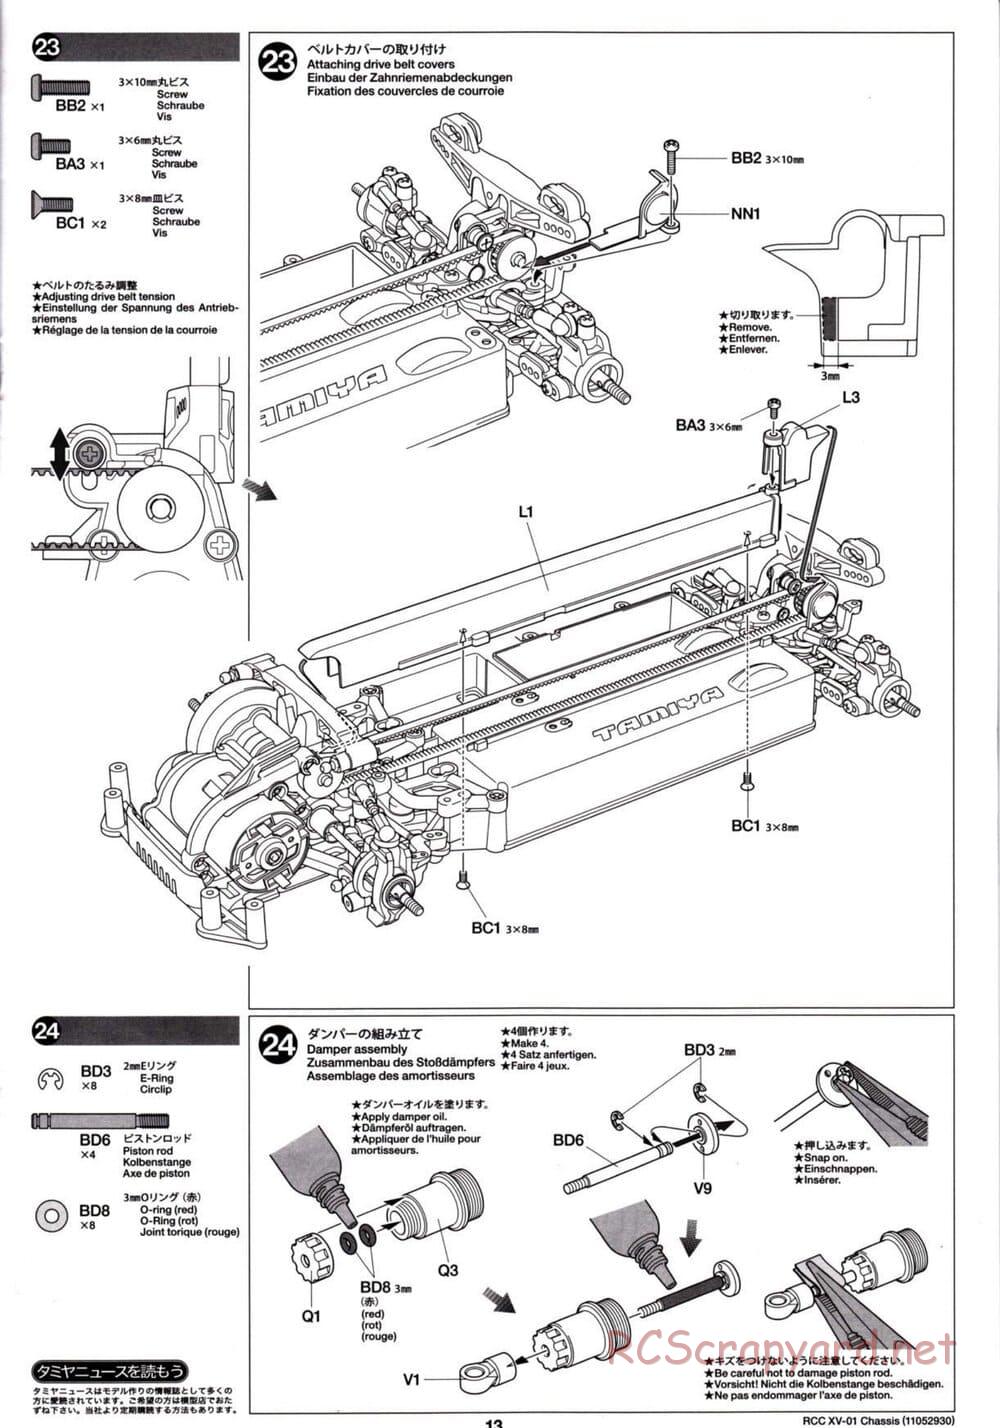 Tamiya - XV-01 Chassis - Manual - Page 13